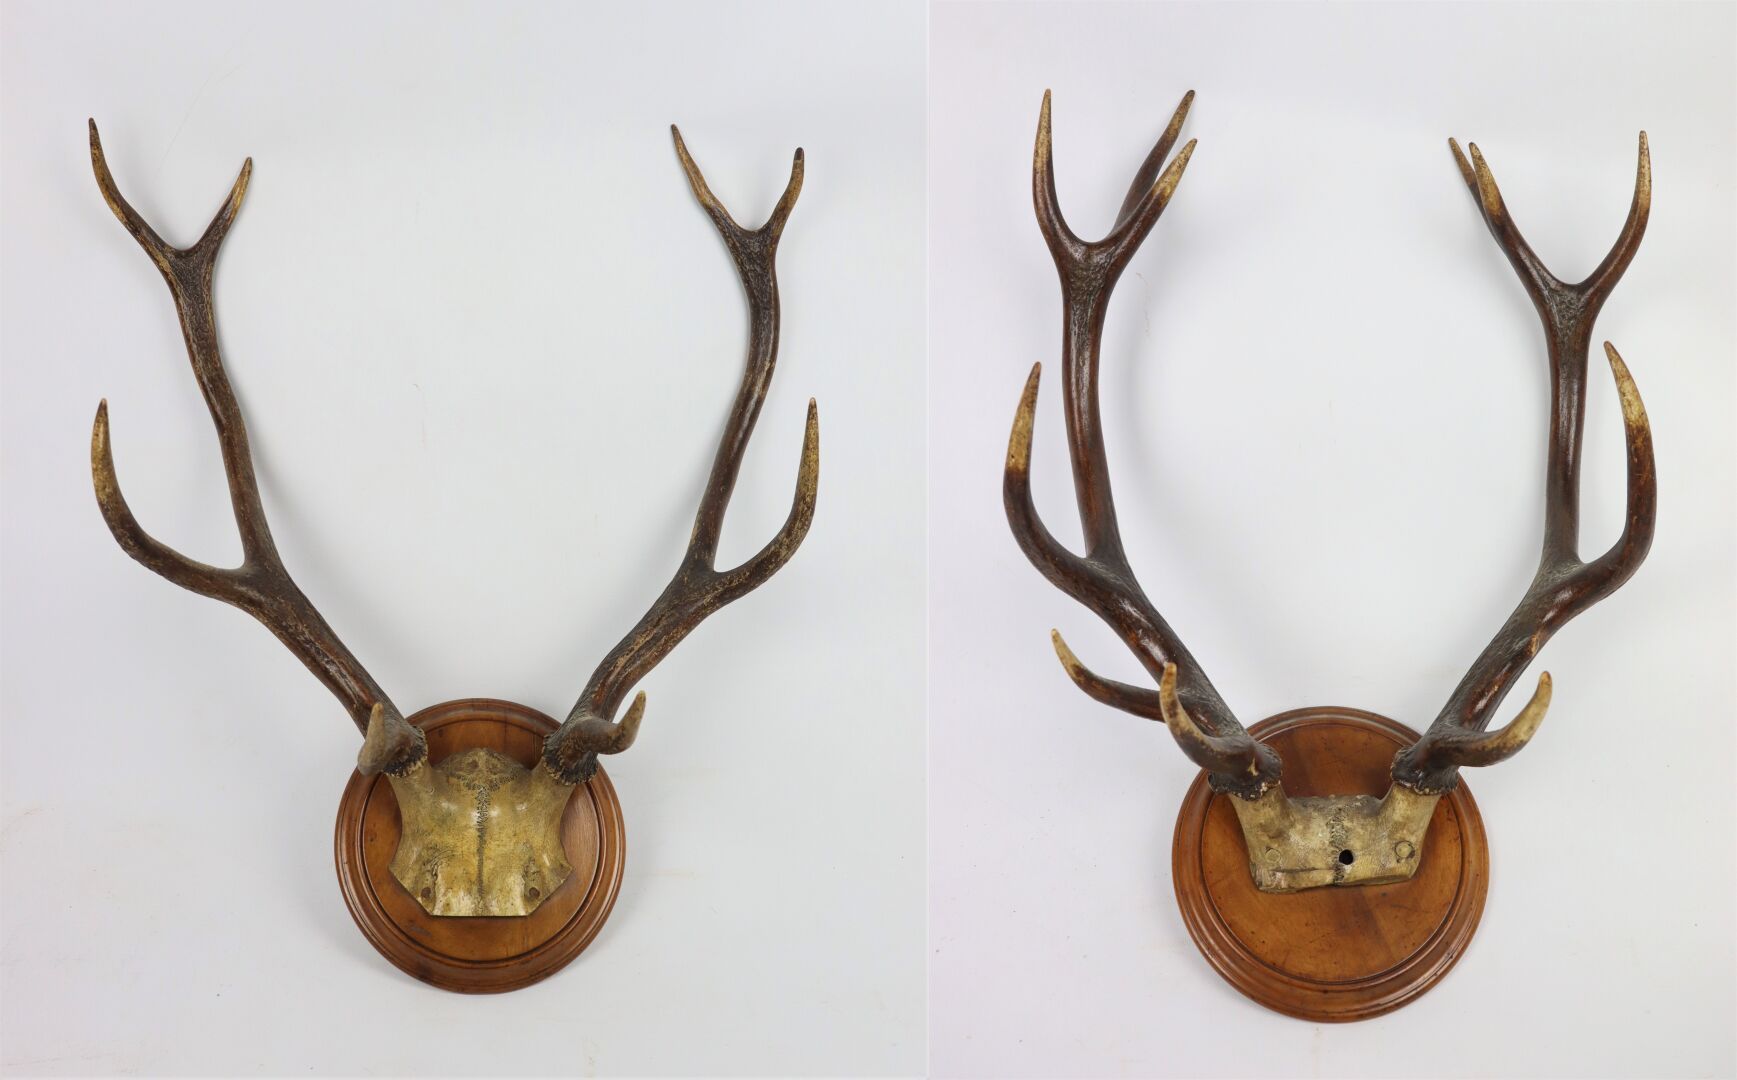 Null 镶嵌在胡桃木奖章上的两只雄鹿杀戮套装。

高_65厘米，宽_54厘米